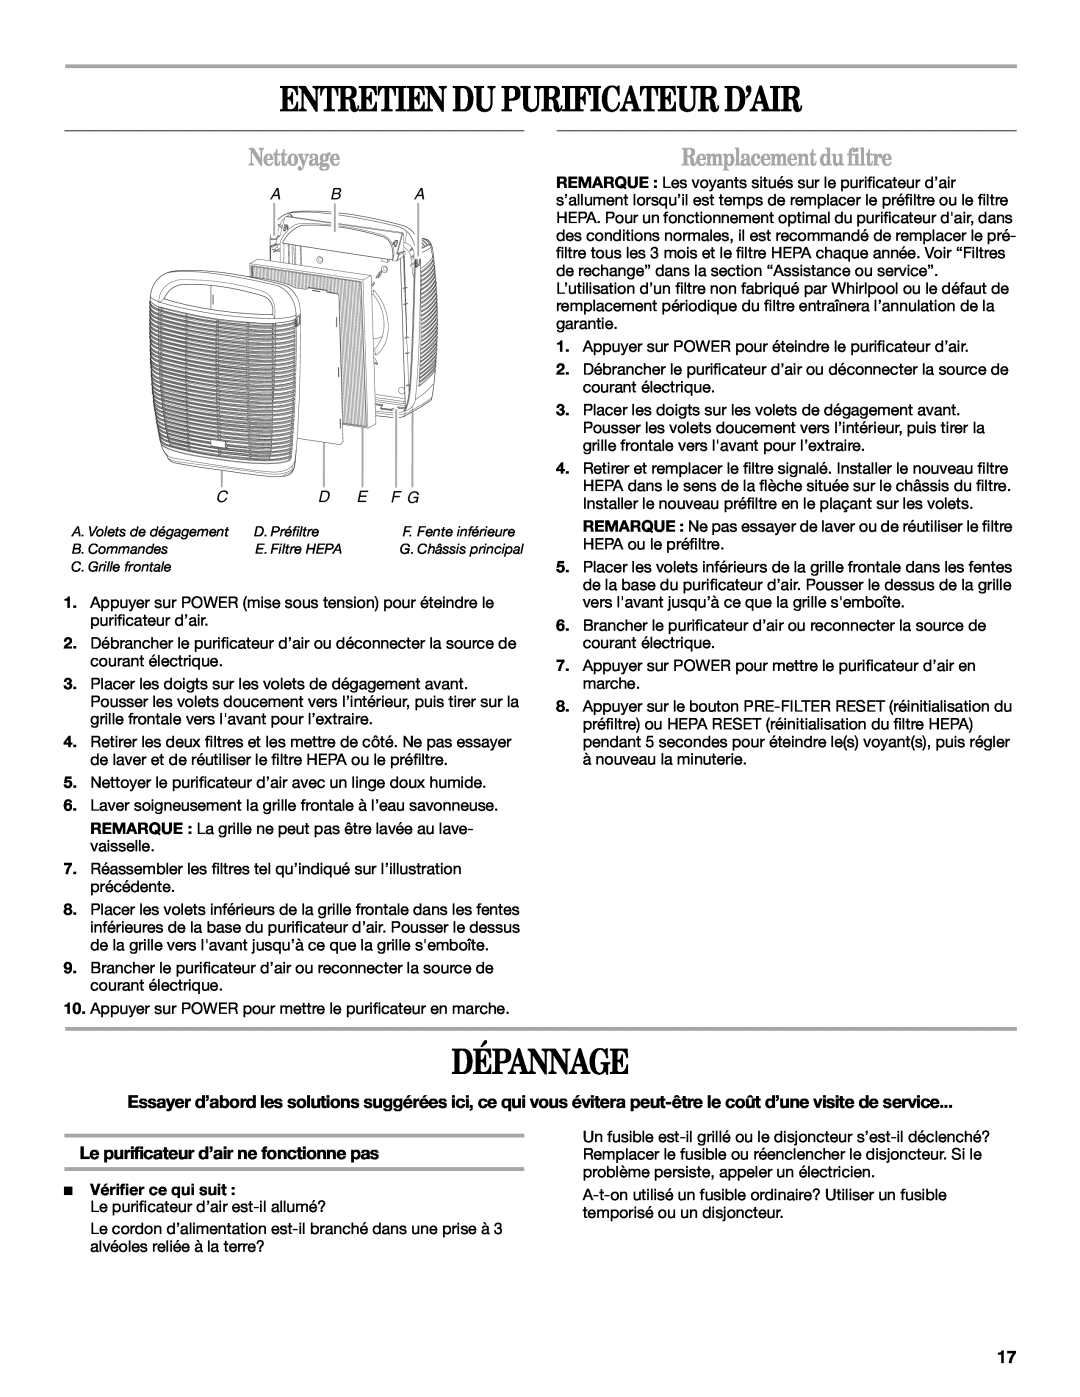 Whirlpool WP-AP510 manual Entretien Du Purificateur D’Air, Dépannage, Nettoyage, Remplacement du filtre, A Ba 